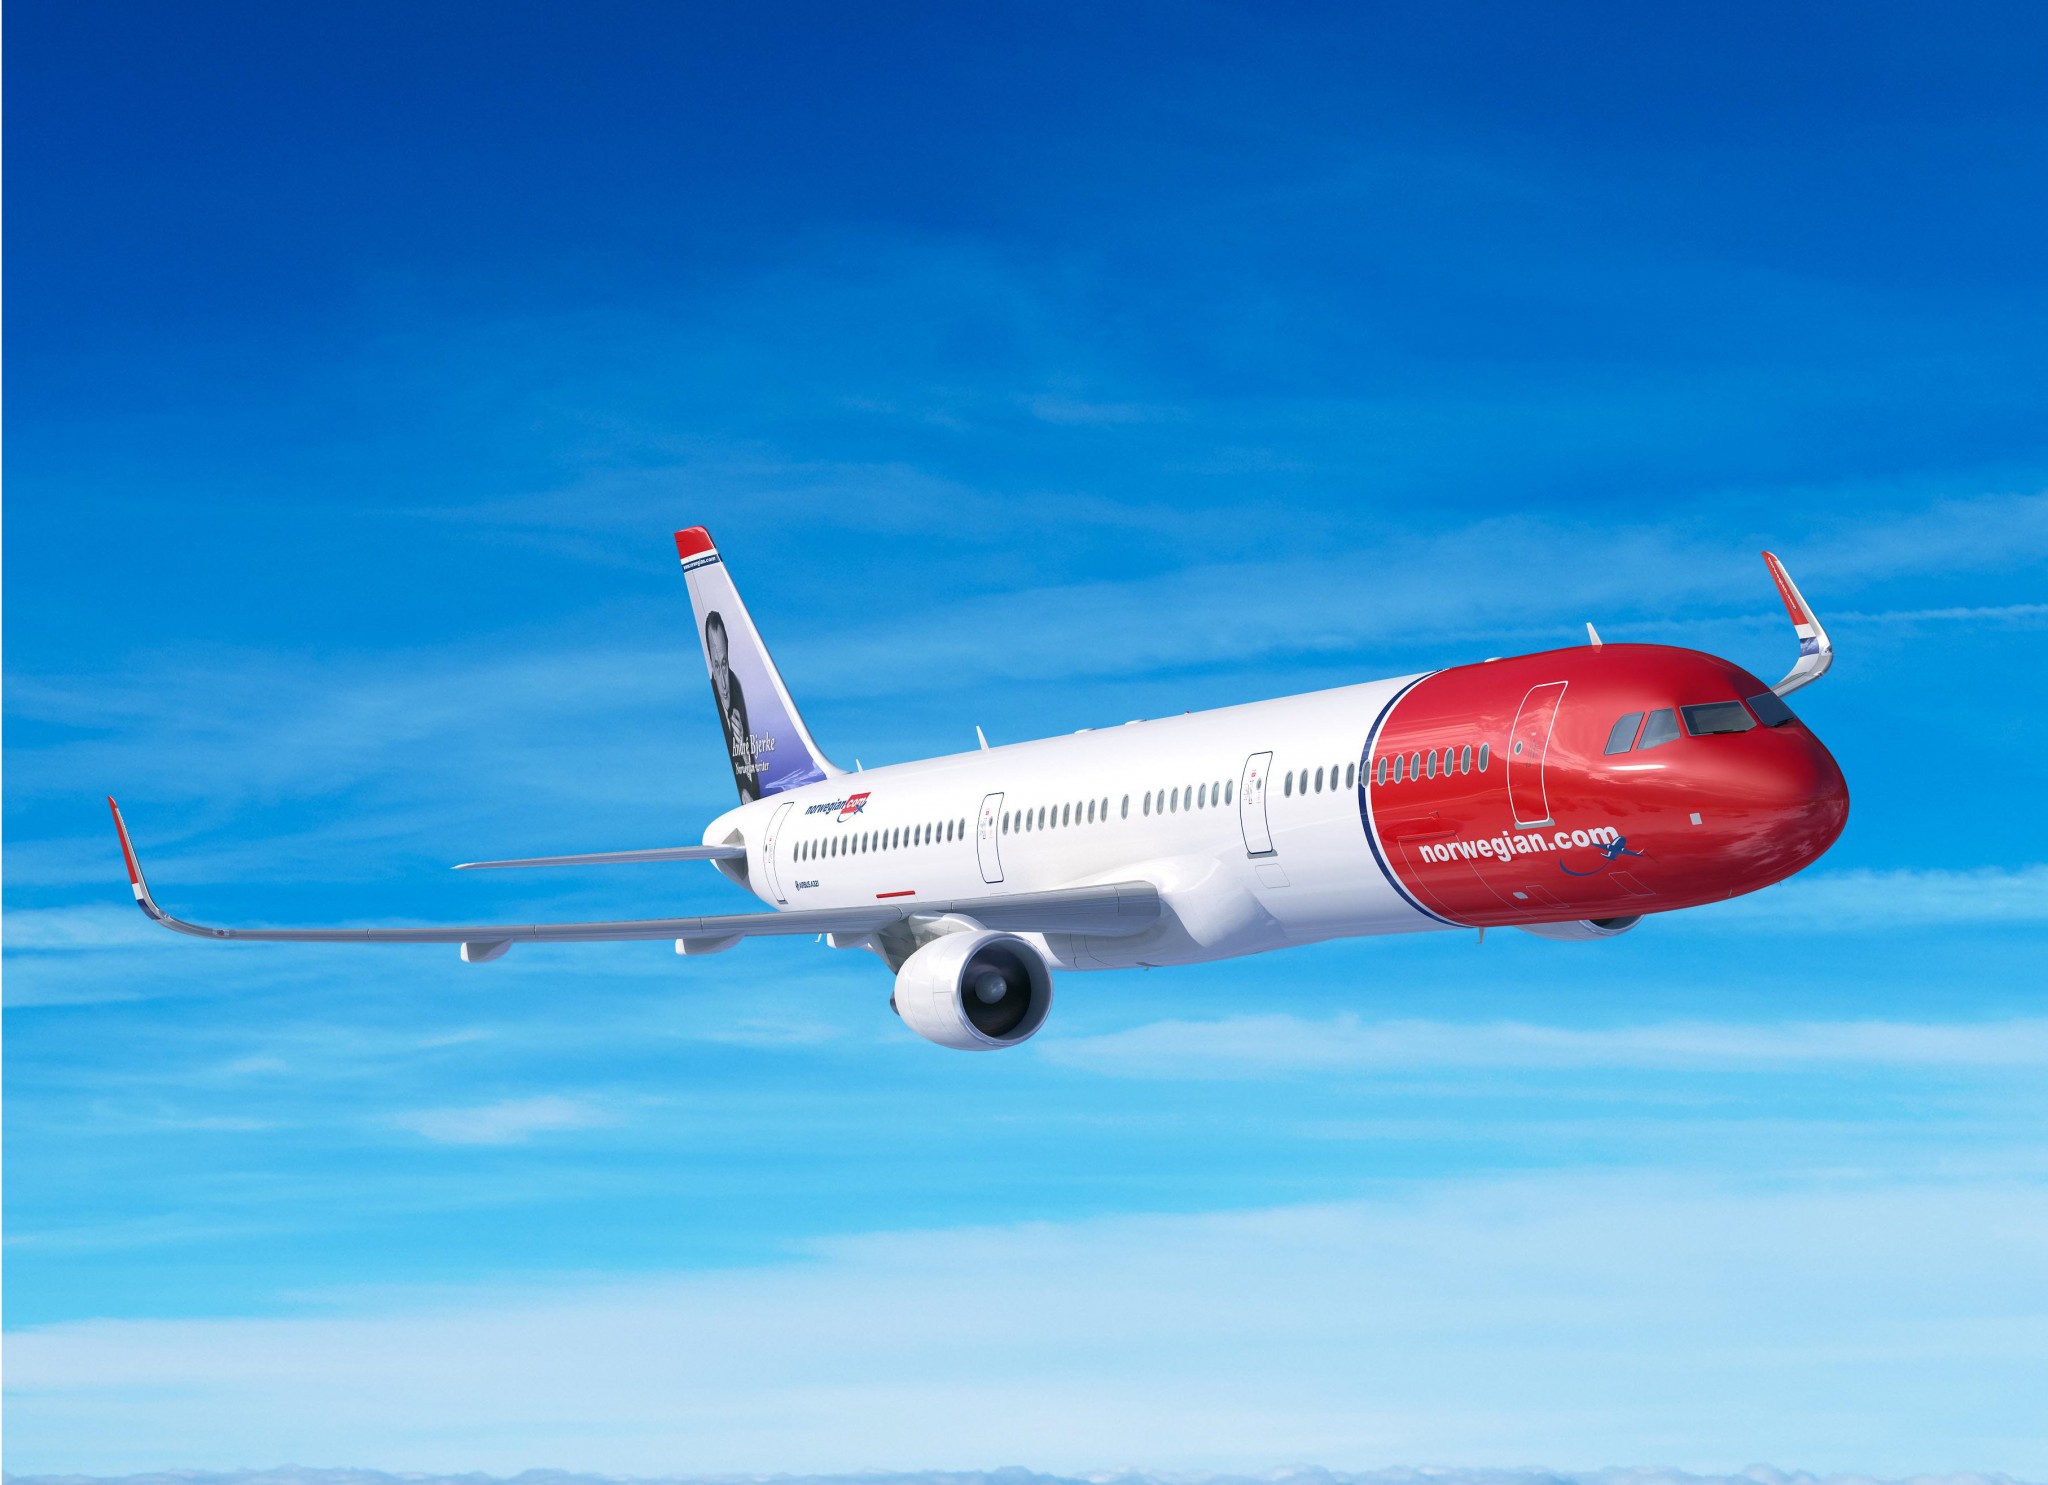 Norwegian launches Scottish flights to the USA